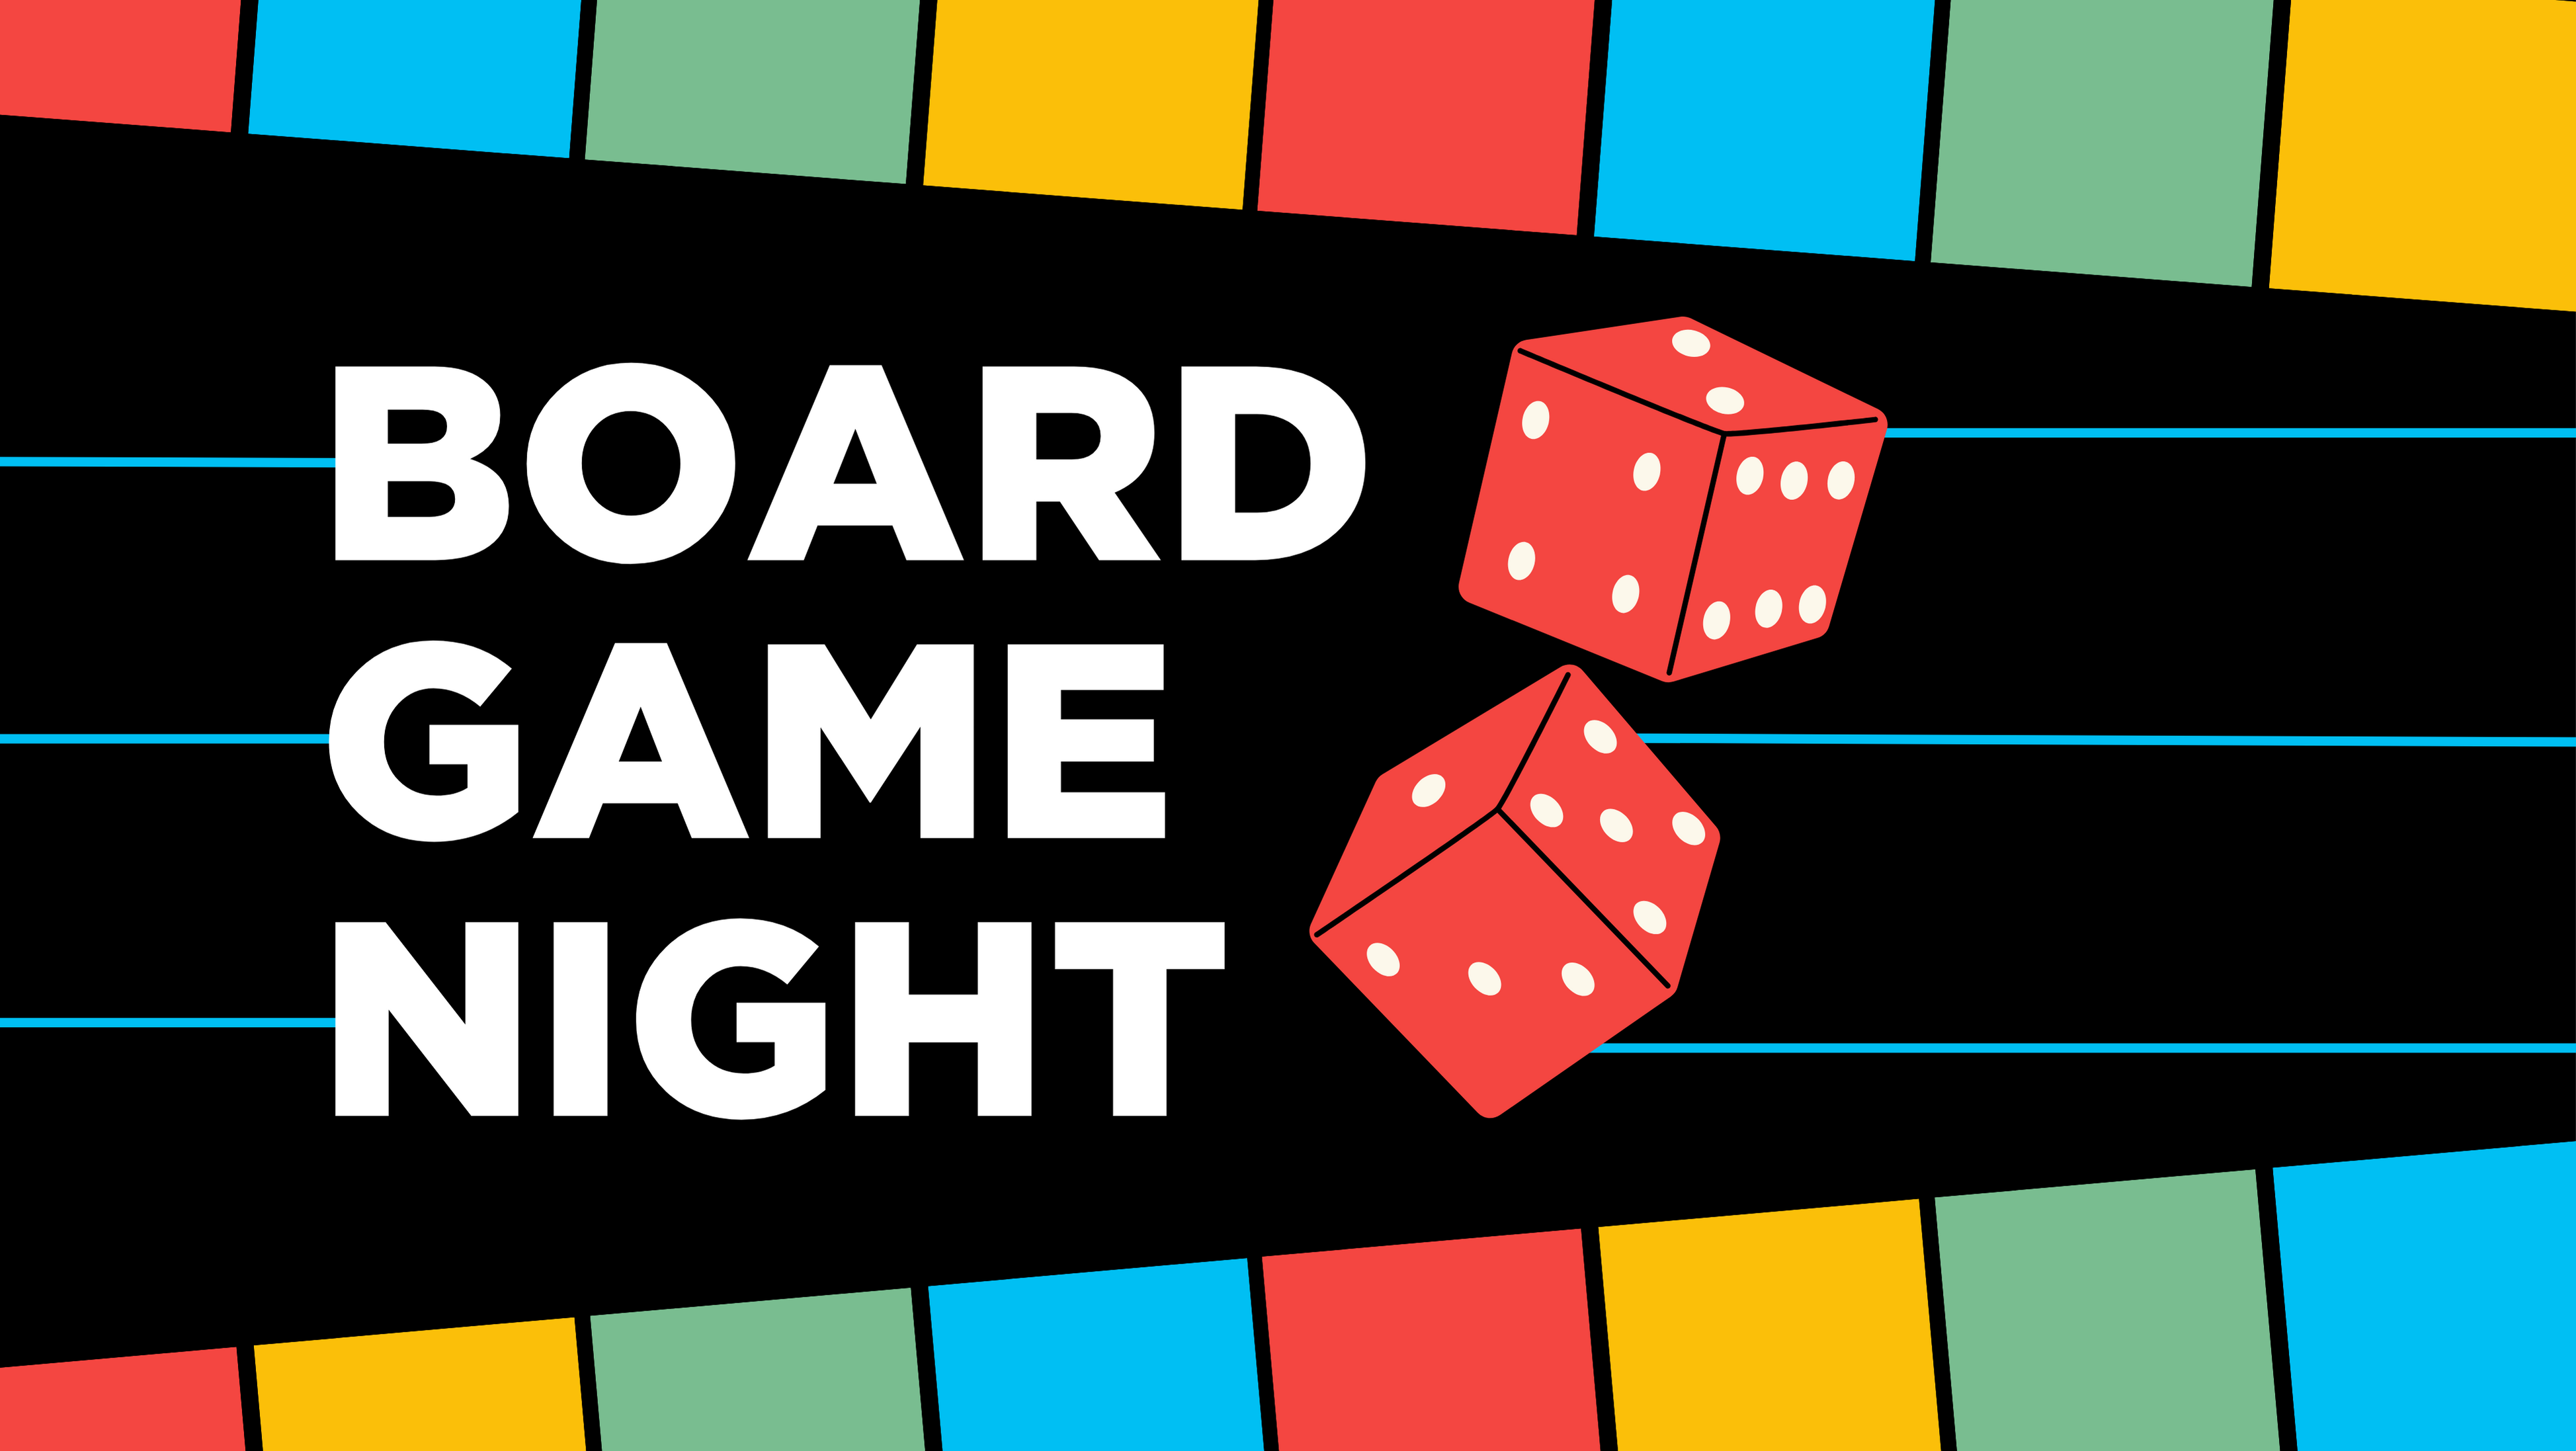 board game night